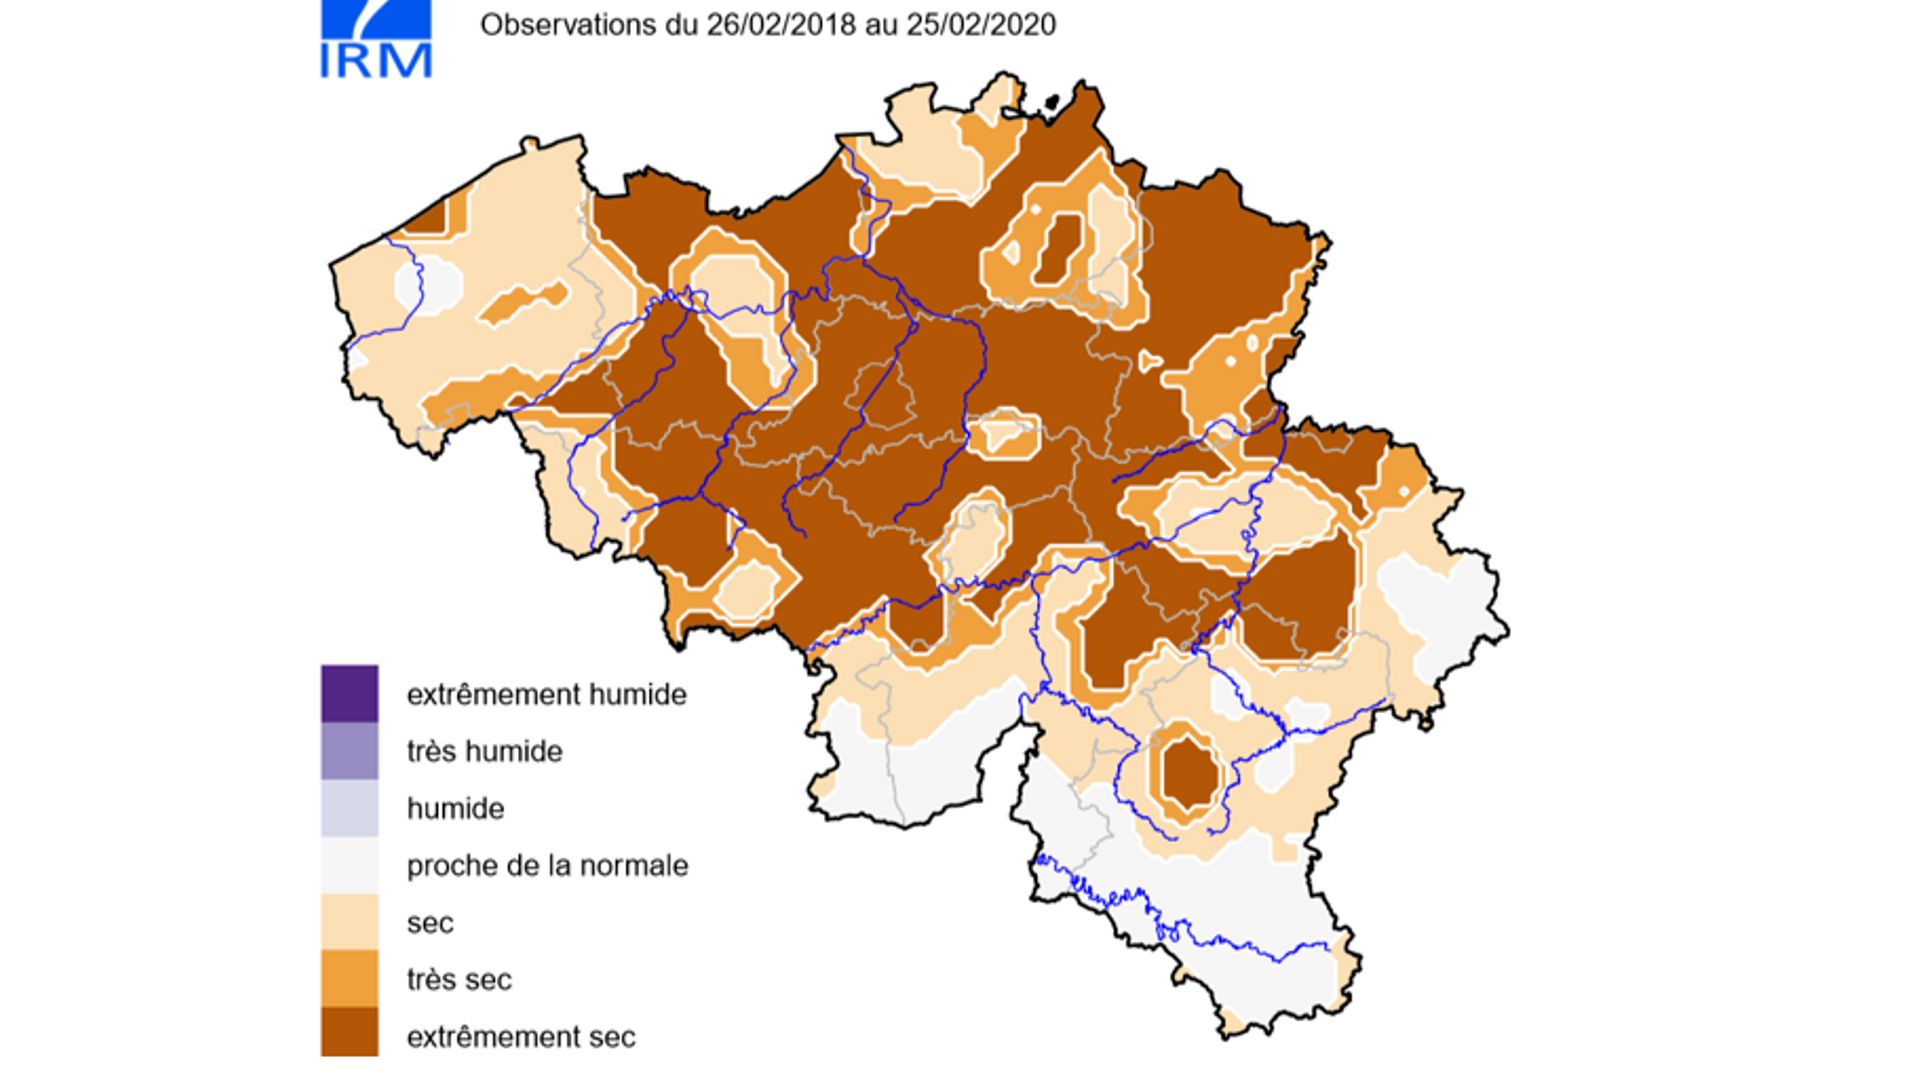 Indice de sécheresse - Observations du 26/02/2018 au 25/02/2020